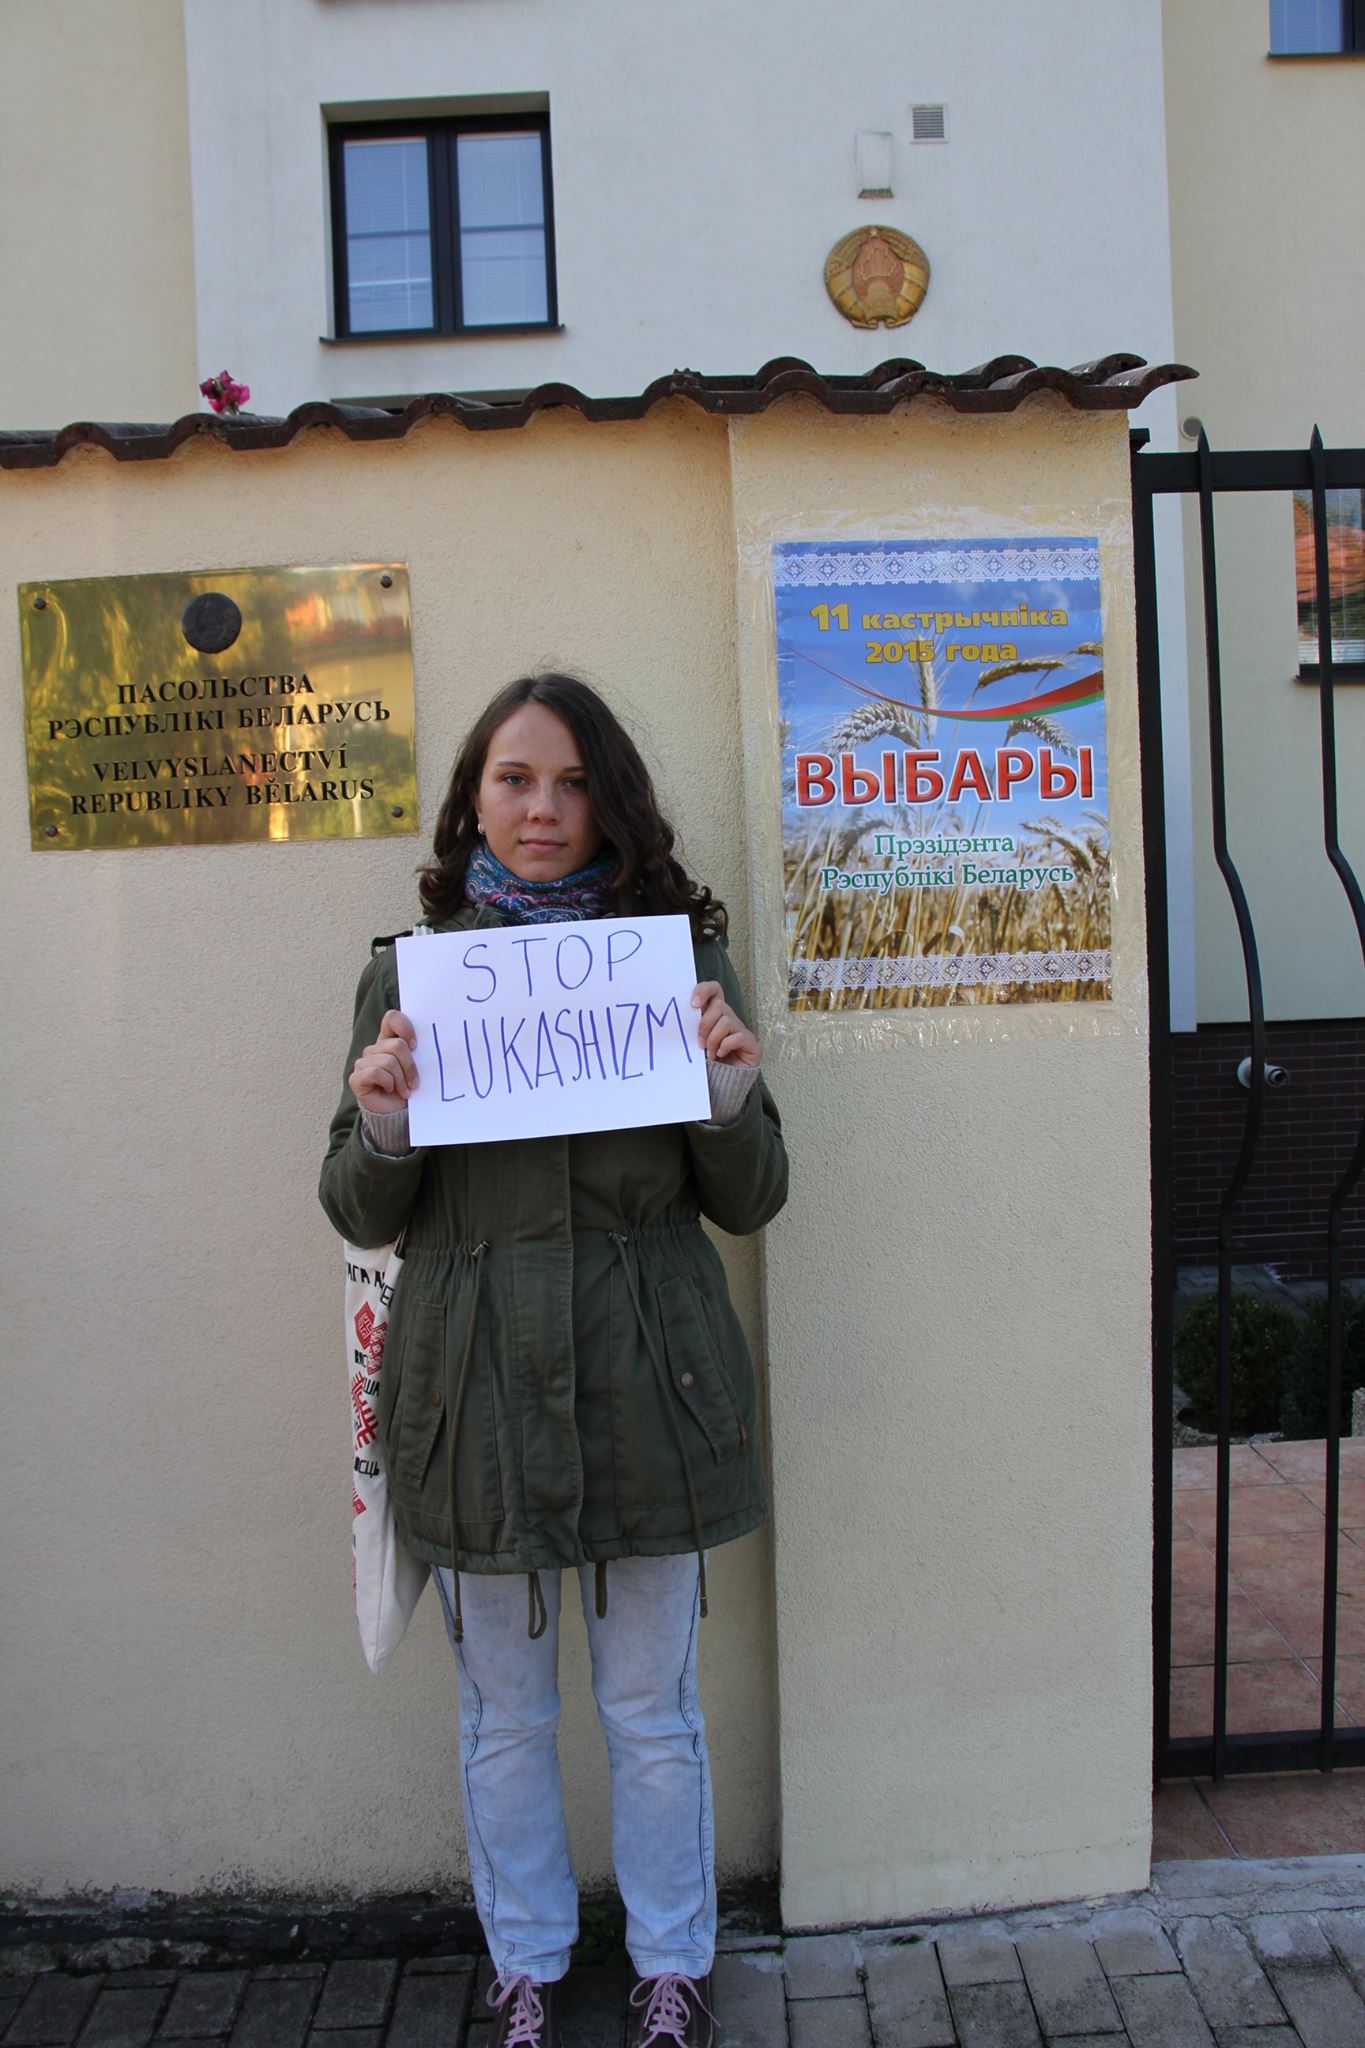 Переселенці з Луганська вимагали чесних виборів під посольством Білорусі у Празі (ФОТО) - фото 3